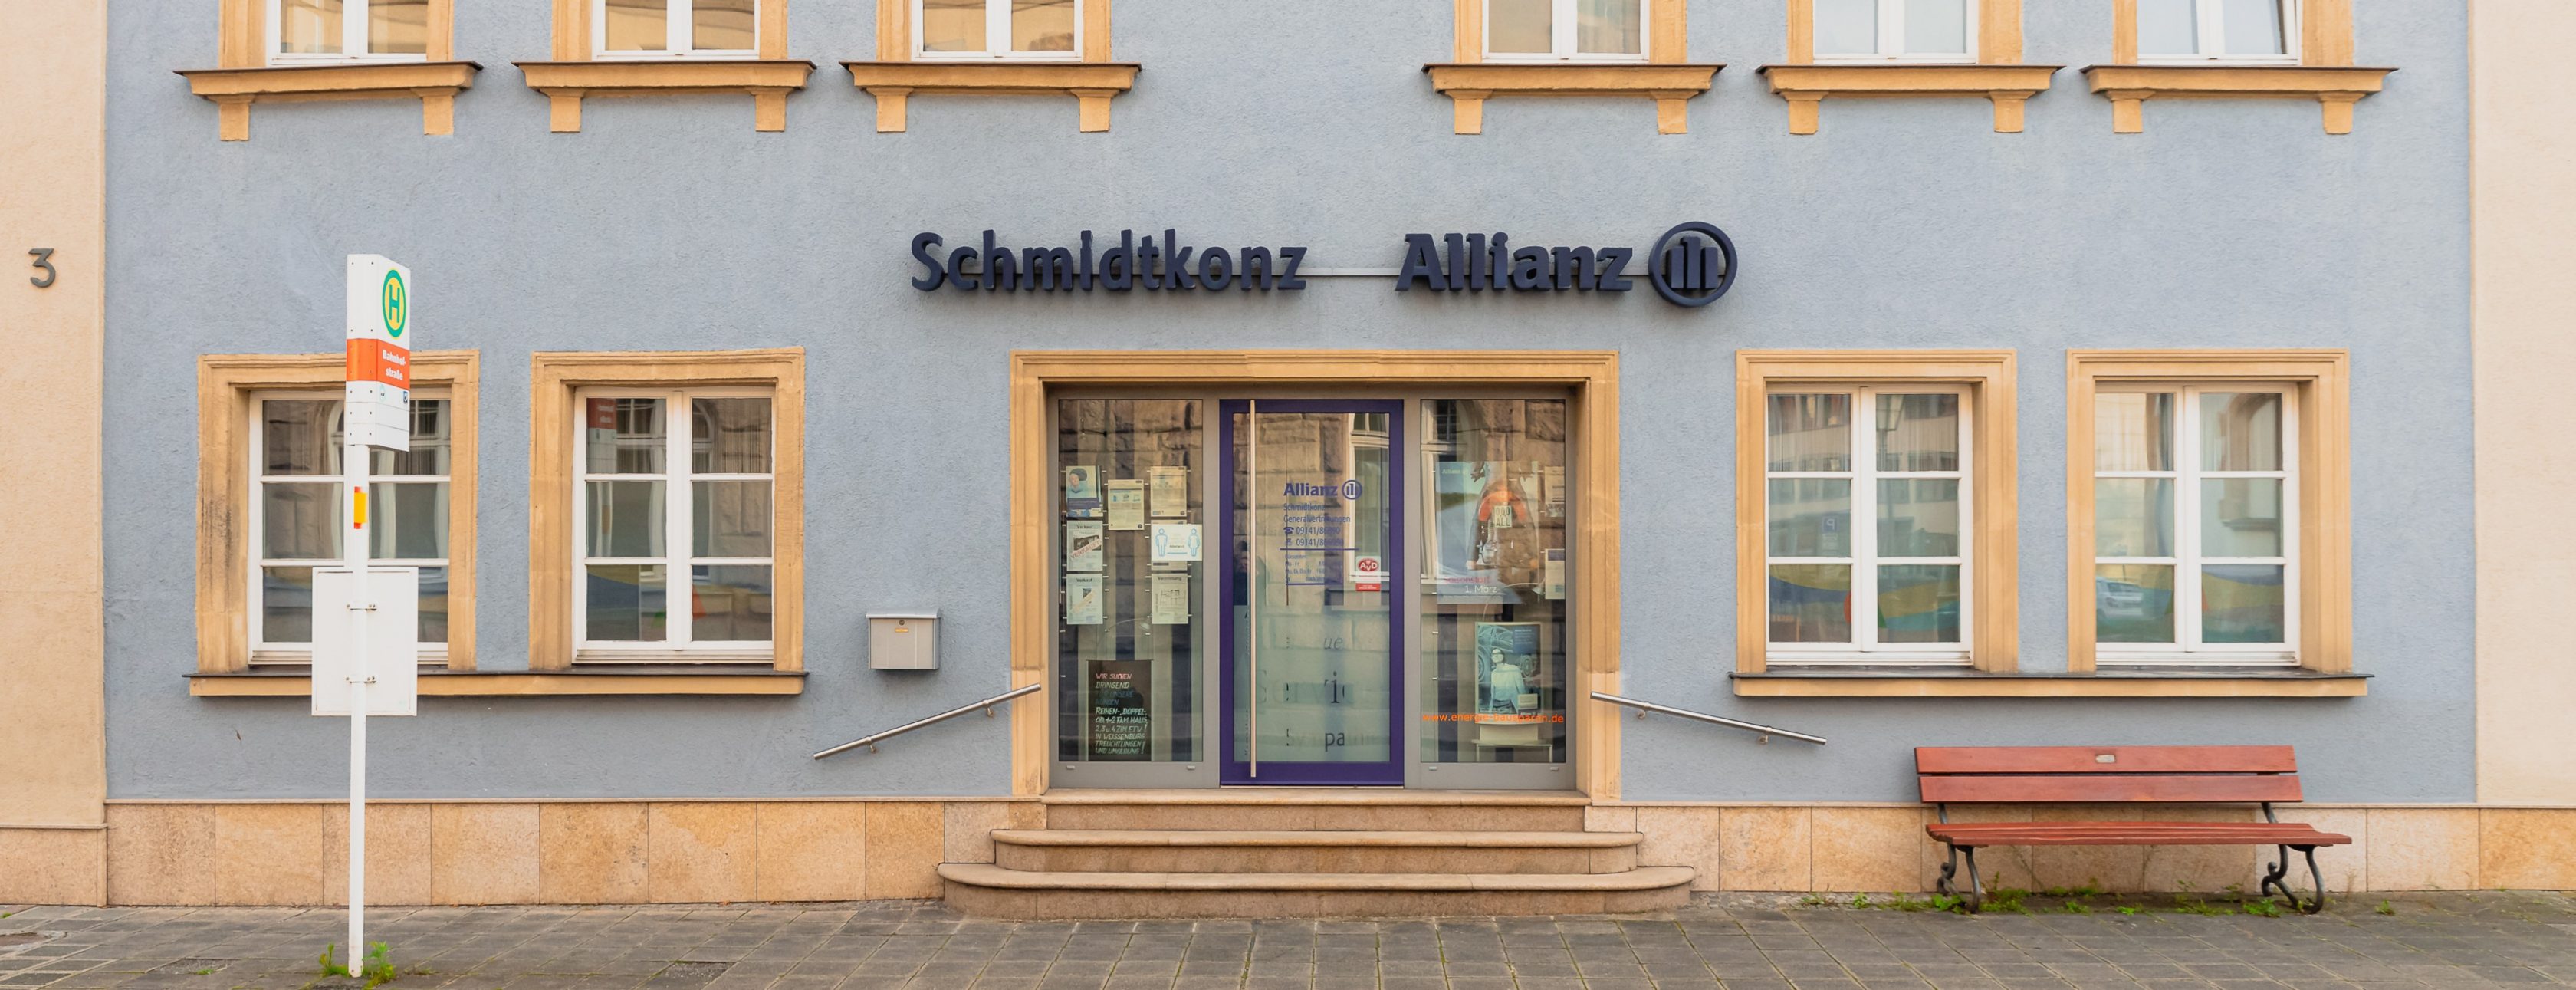 Allianz Versicherung Thomas Schmidtkonz Weißenburg - Titelbild